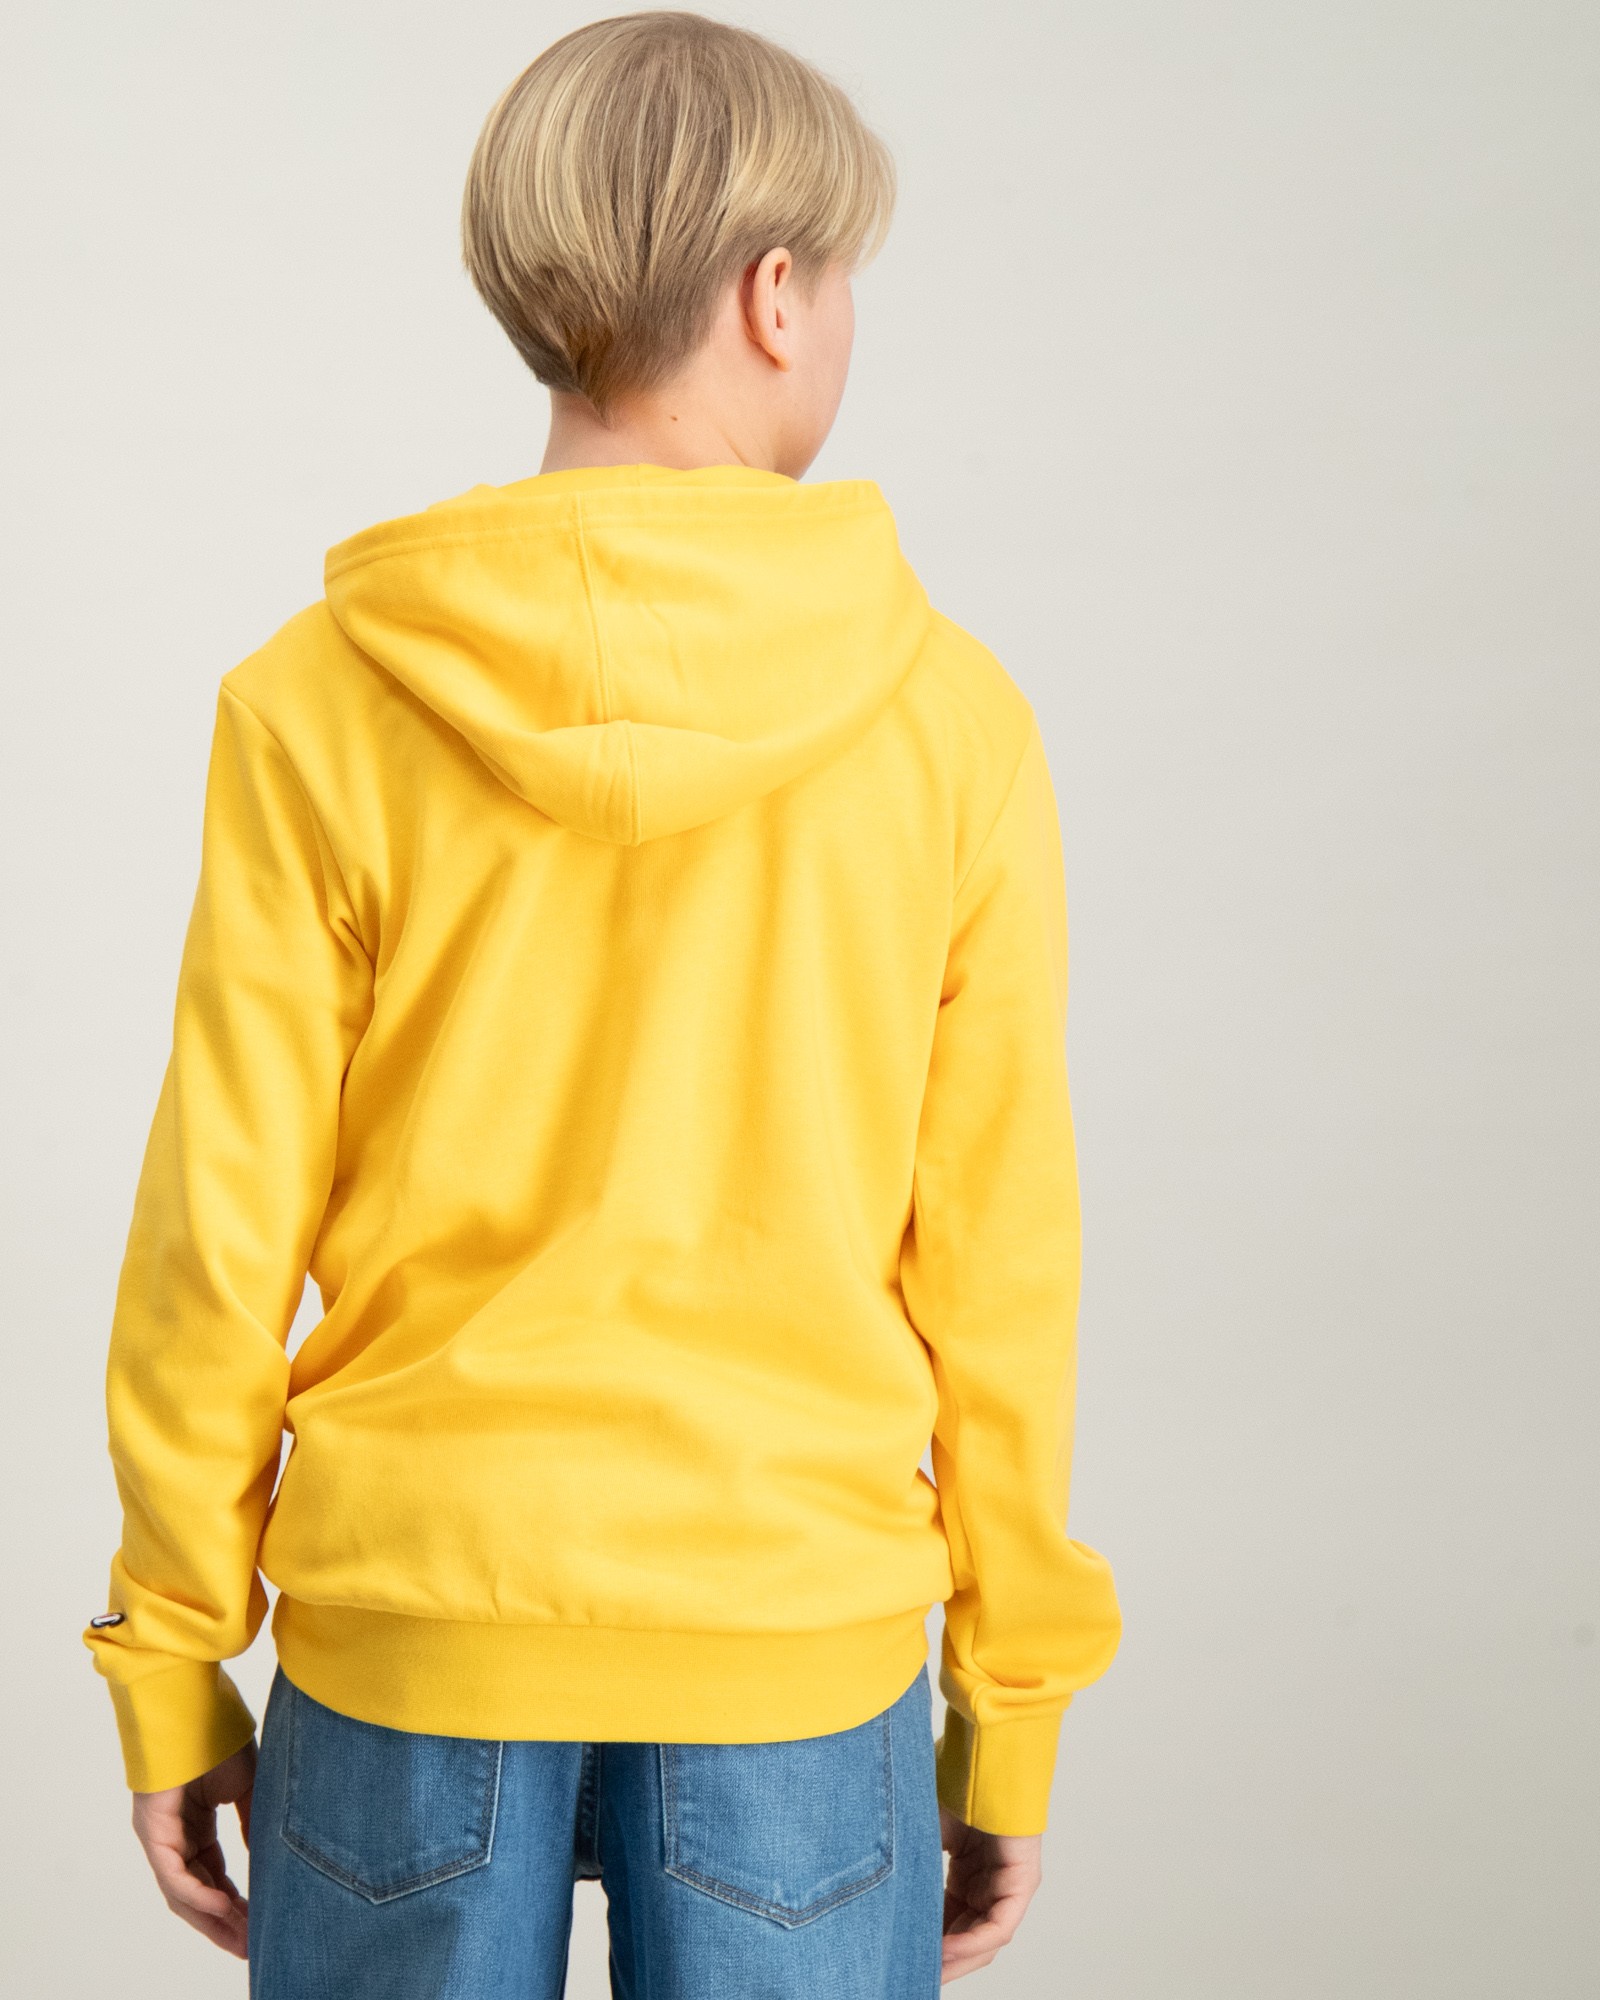 Gelb Hooded Sweatshirt für Jungen | Kids Brand Store